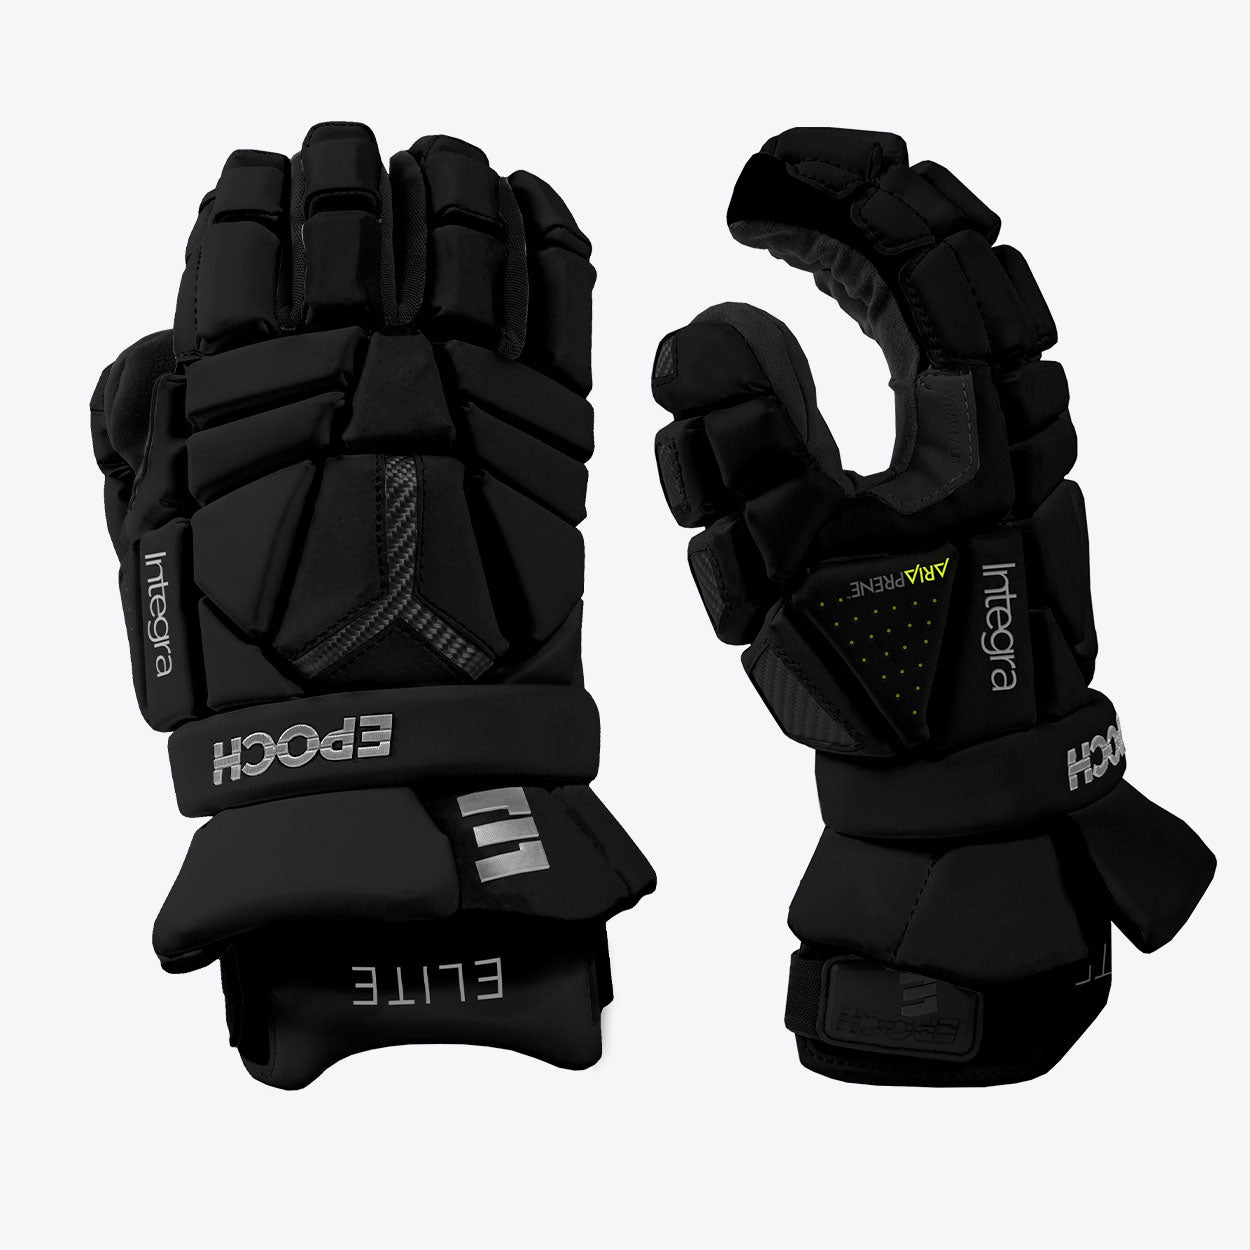 Integra Elite Gloves